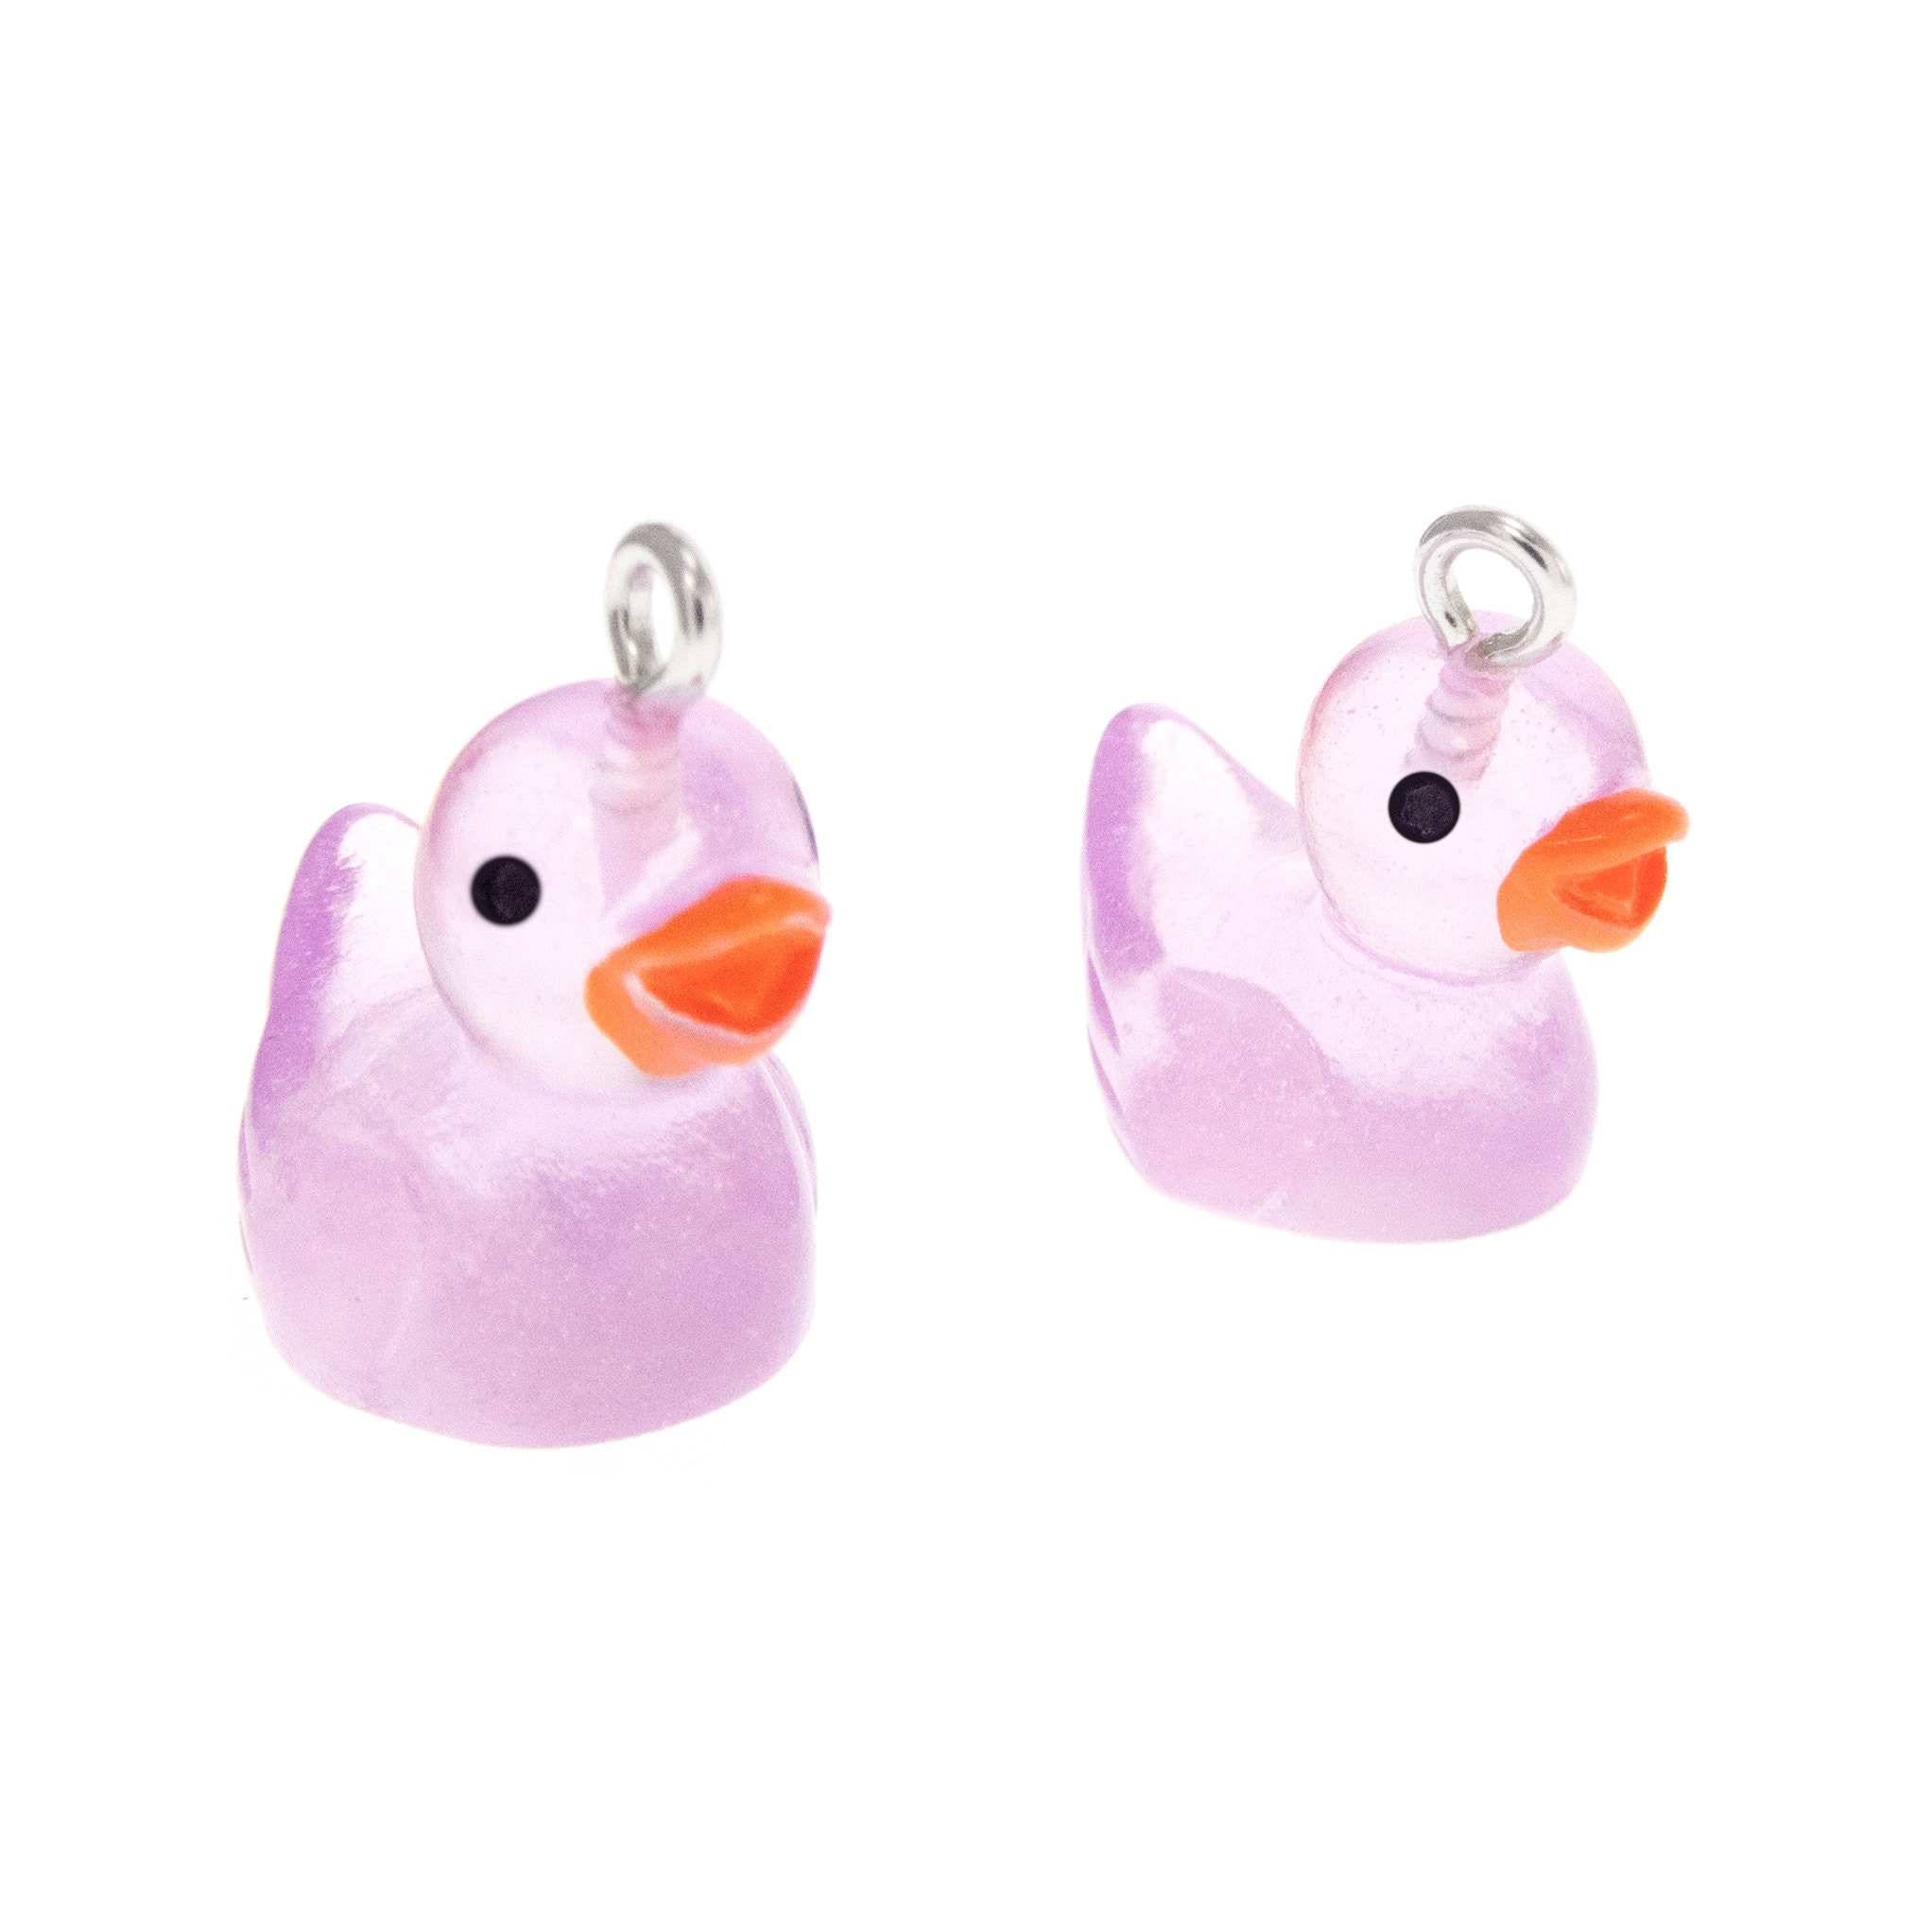 programming women earrings with rubber ducks